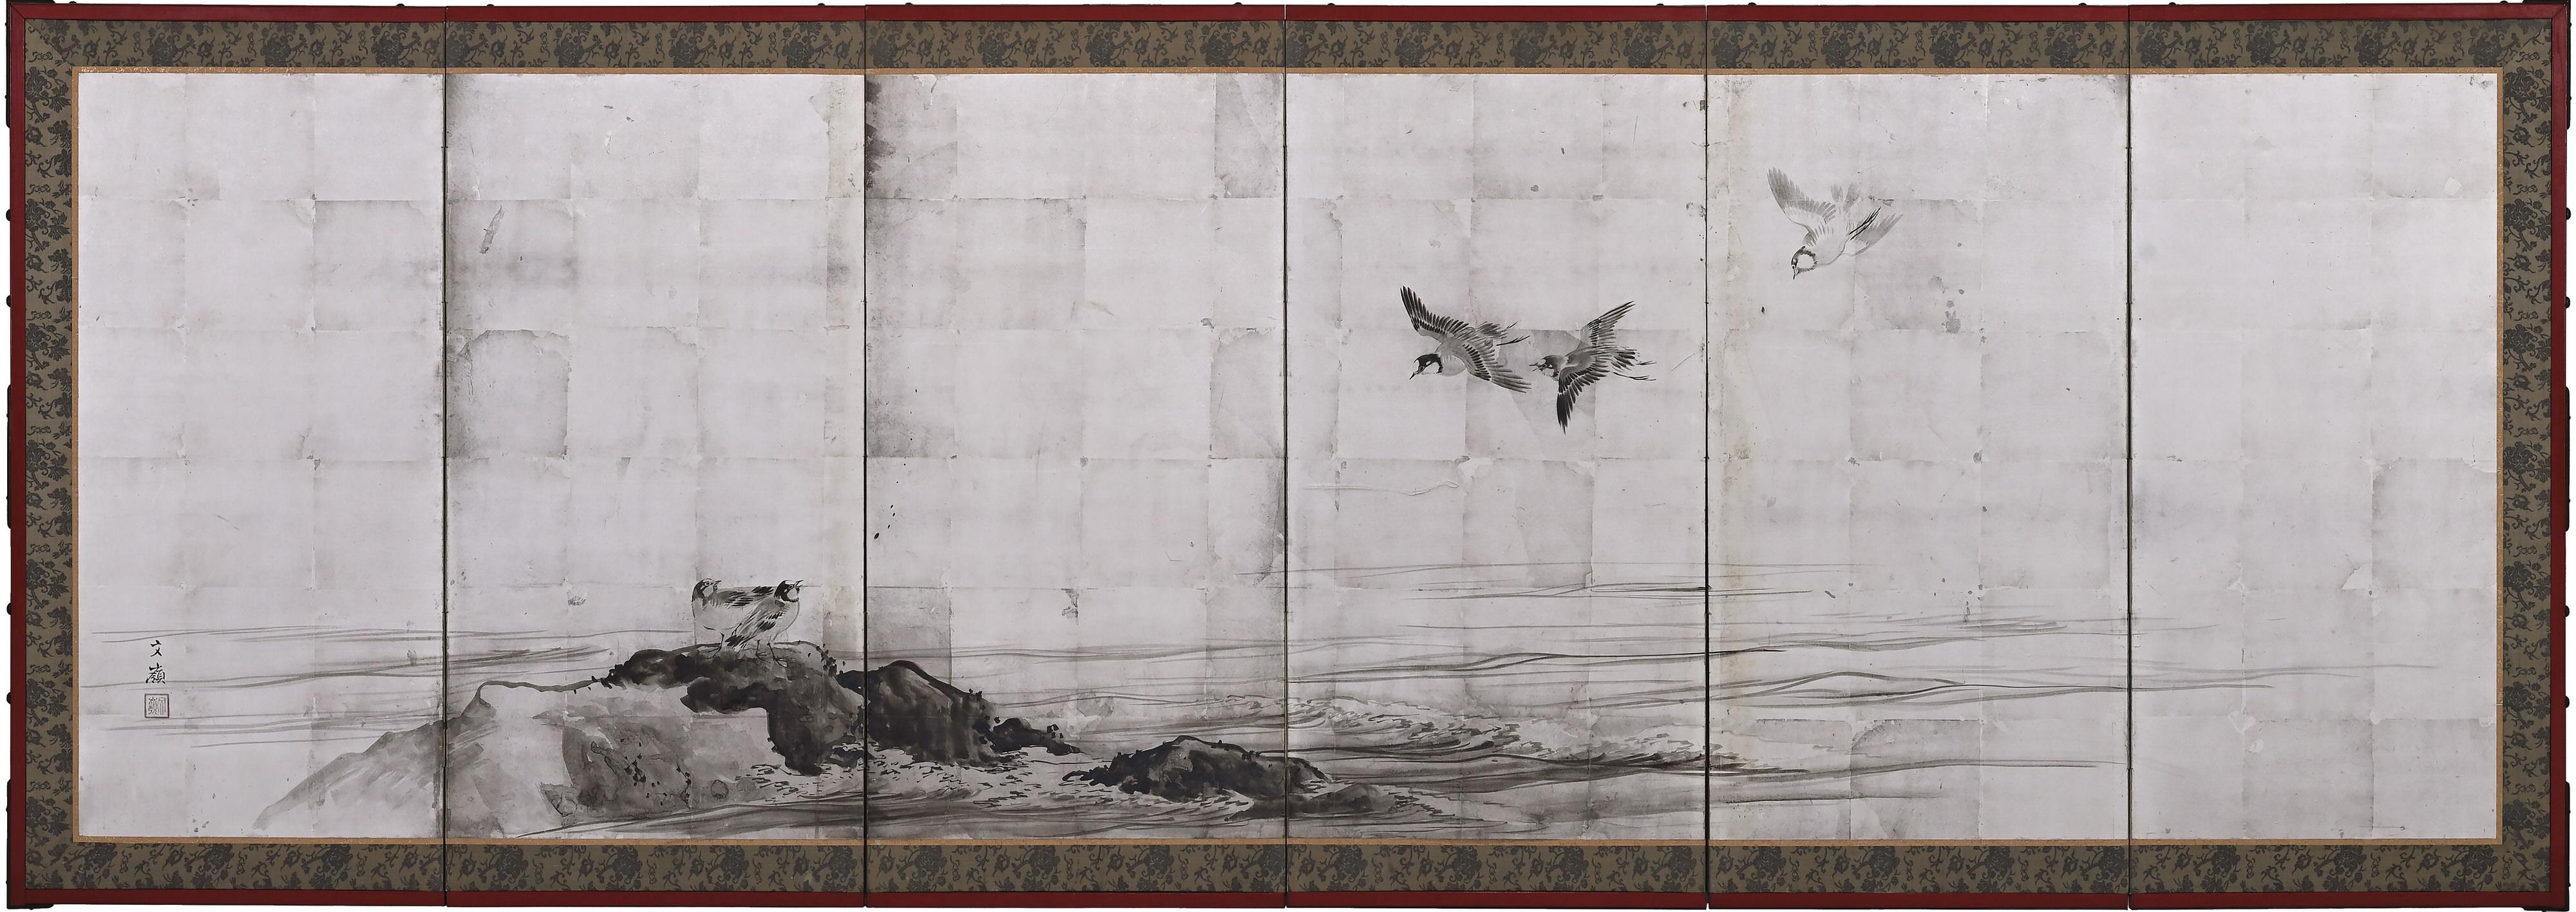 Reiher & Regenpfeifer

Tusche und Blattsilber auf Papier

Maekawa Bunrei (1837-1917)

Zwei niedrige japanische Paravents mit sechs Tafeln von Maekawa Bunrei, einem späteren Meister der Shijo-Malschule aus Kyoto. Auf dem rechten Bildschirm steht ein